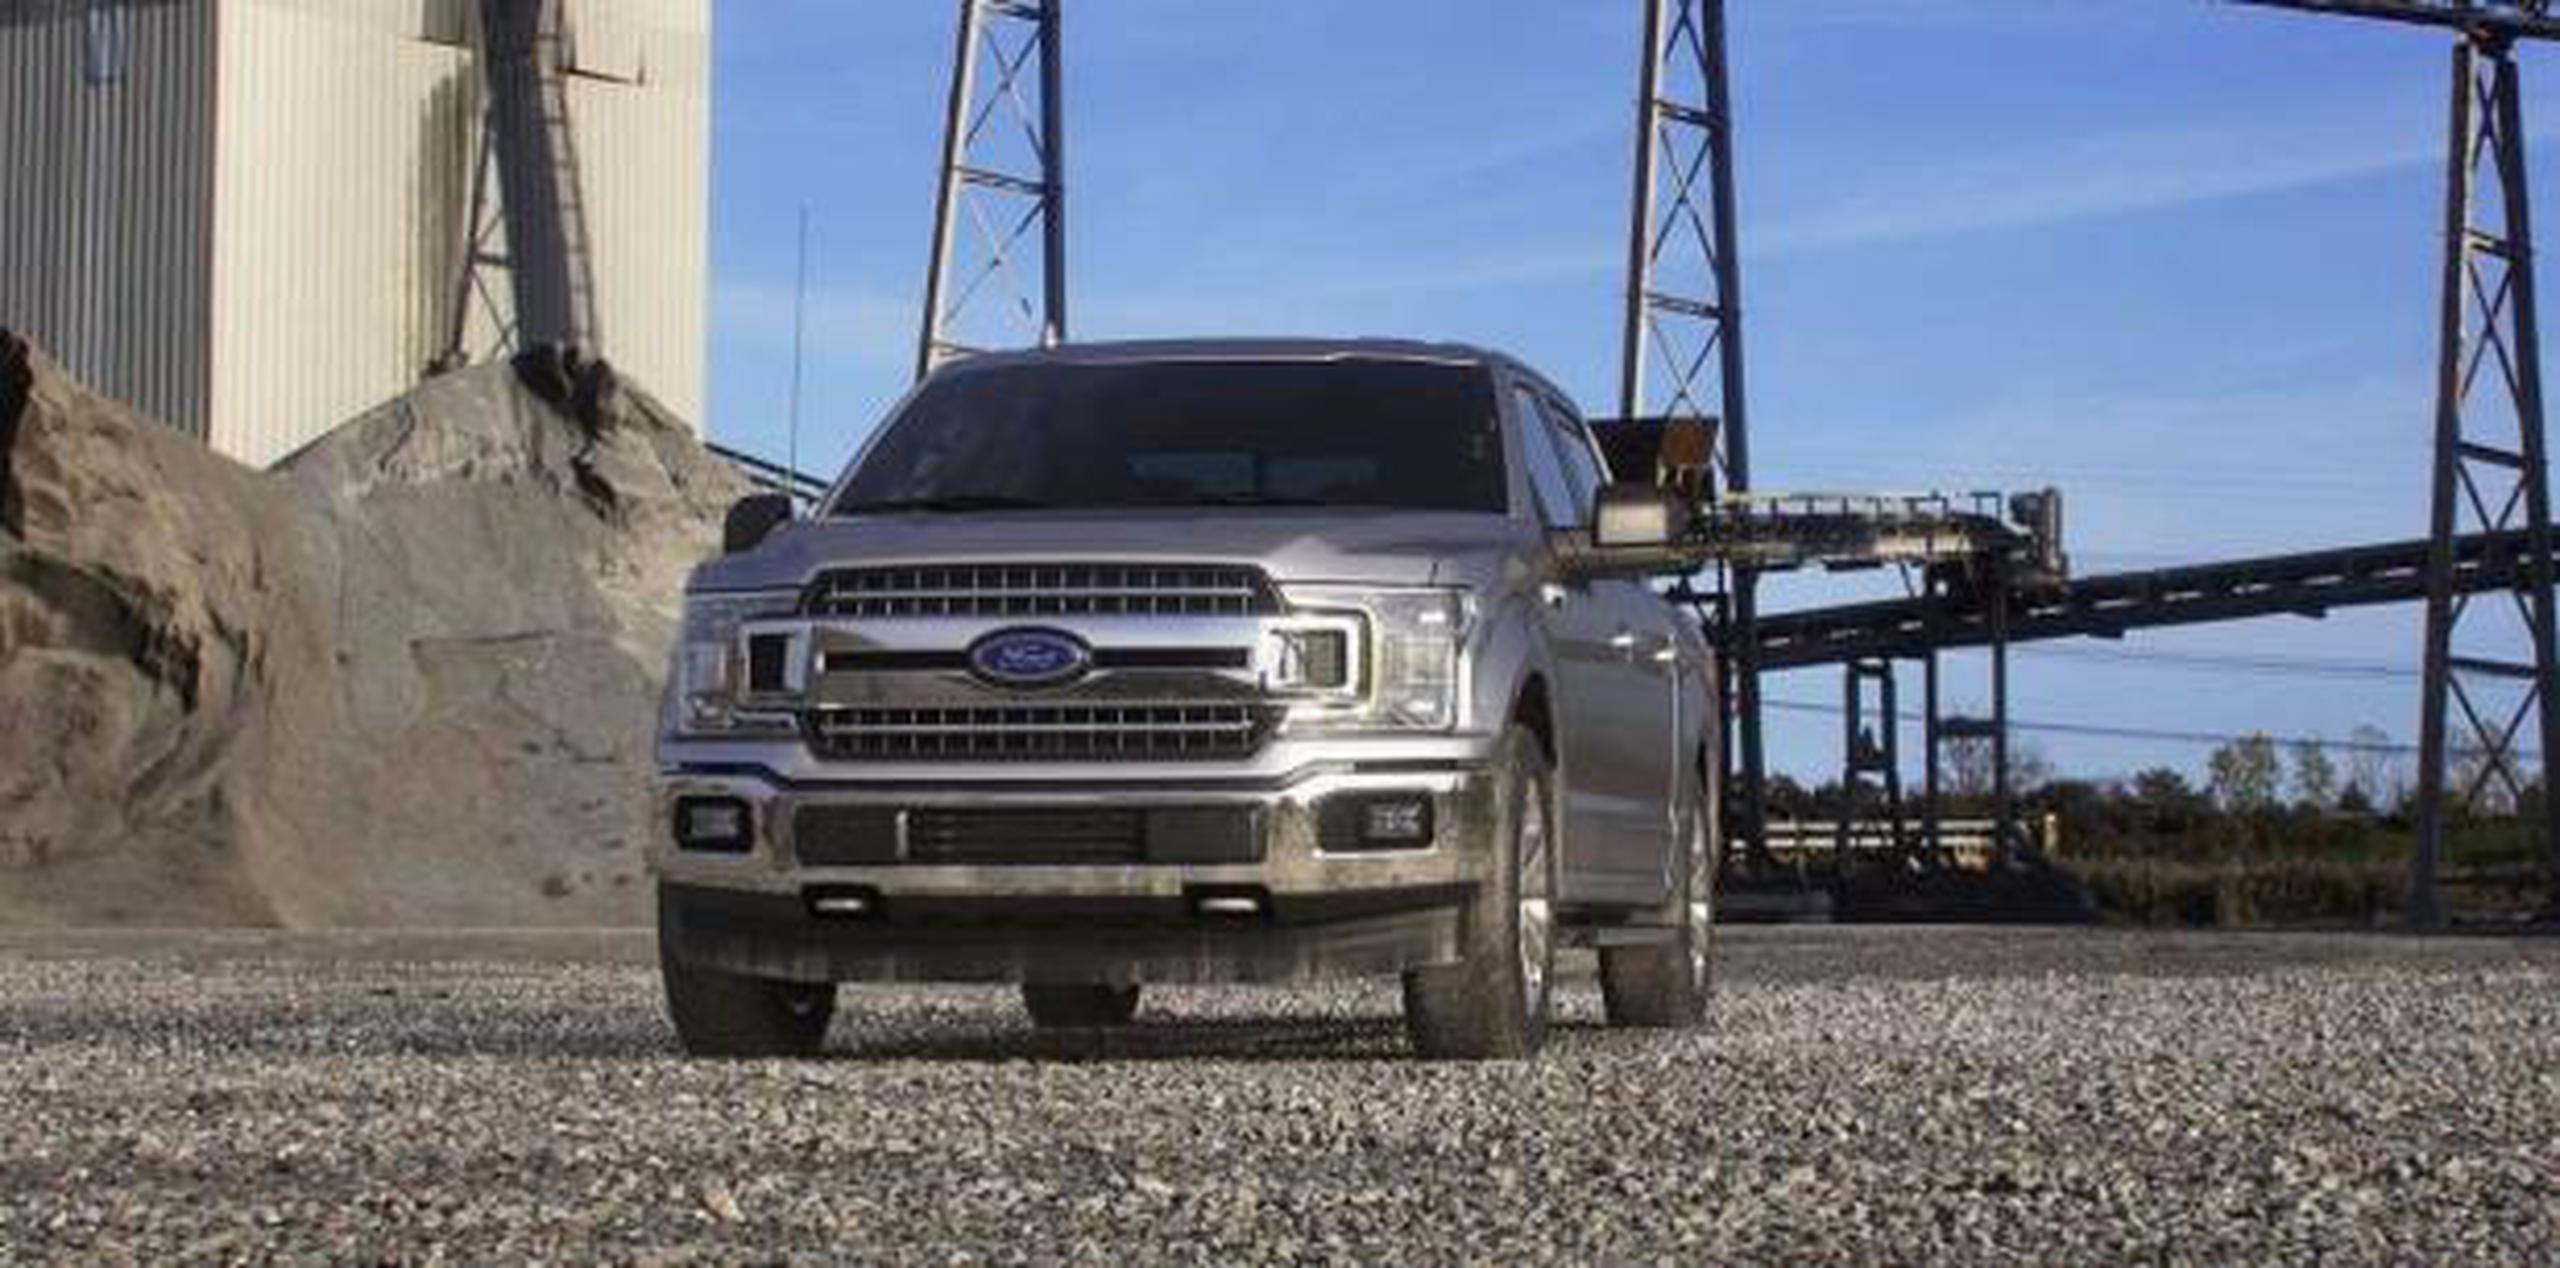 Las camionetas fueron fabricadas entre el 12 de marzo de 2014 y el 23 de agosto de 2018, de acuerdo con documentos publicados el jueves por la NHTSA. (Ford)